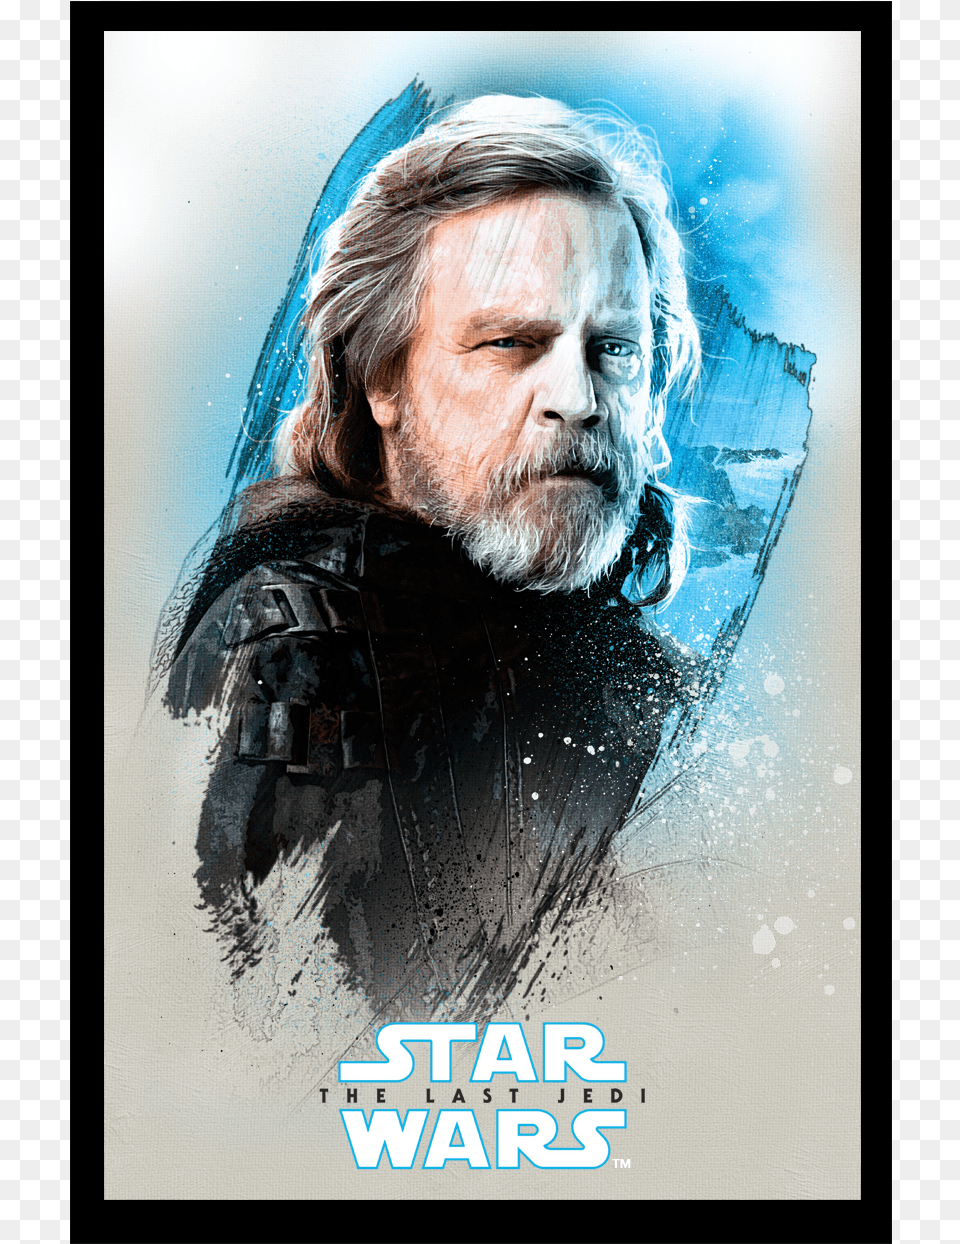 Star Wars Kaufland Luke Skywalker, Head, Advertisement, Beard, Poster Free Transparent Png